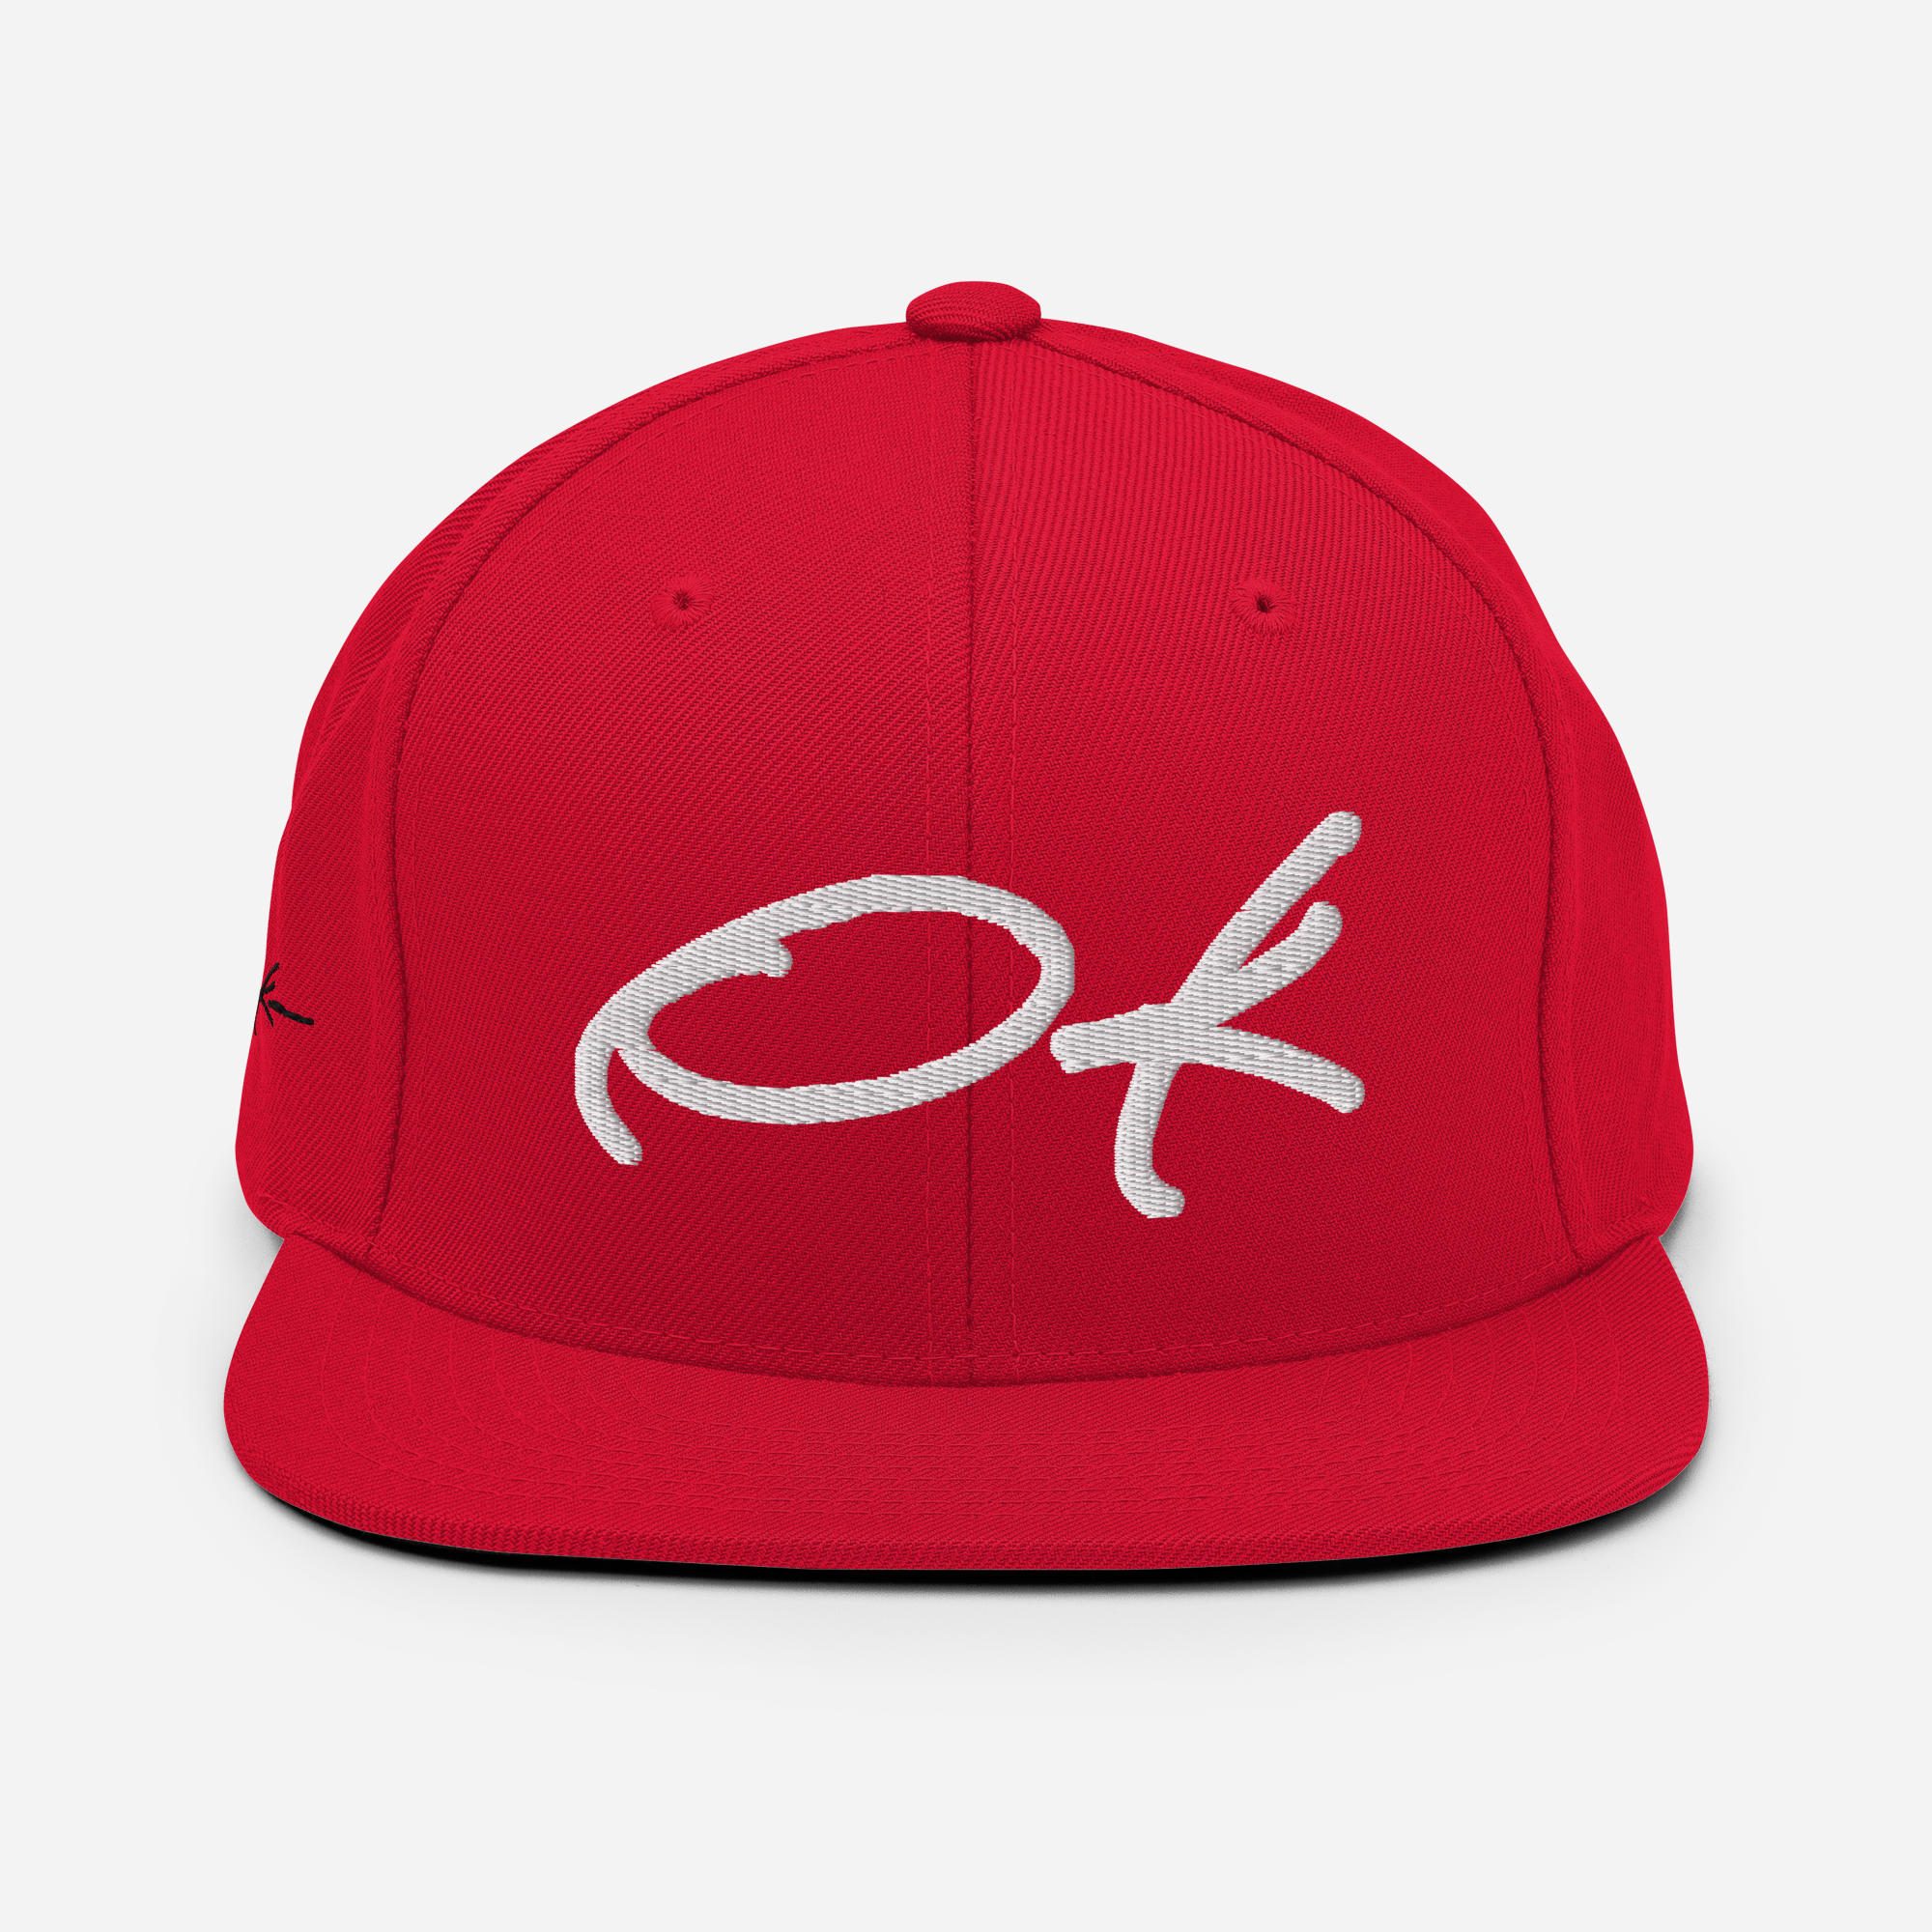 designer baseball cap red